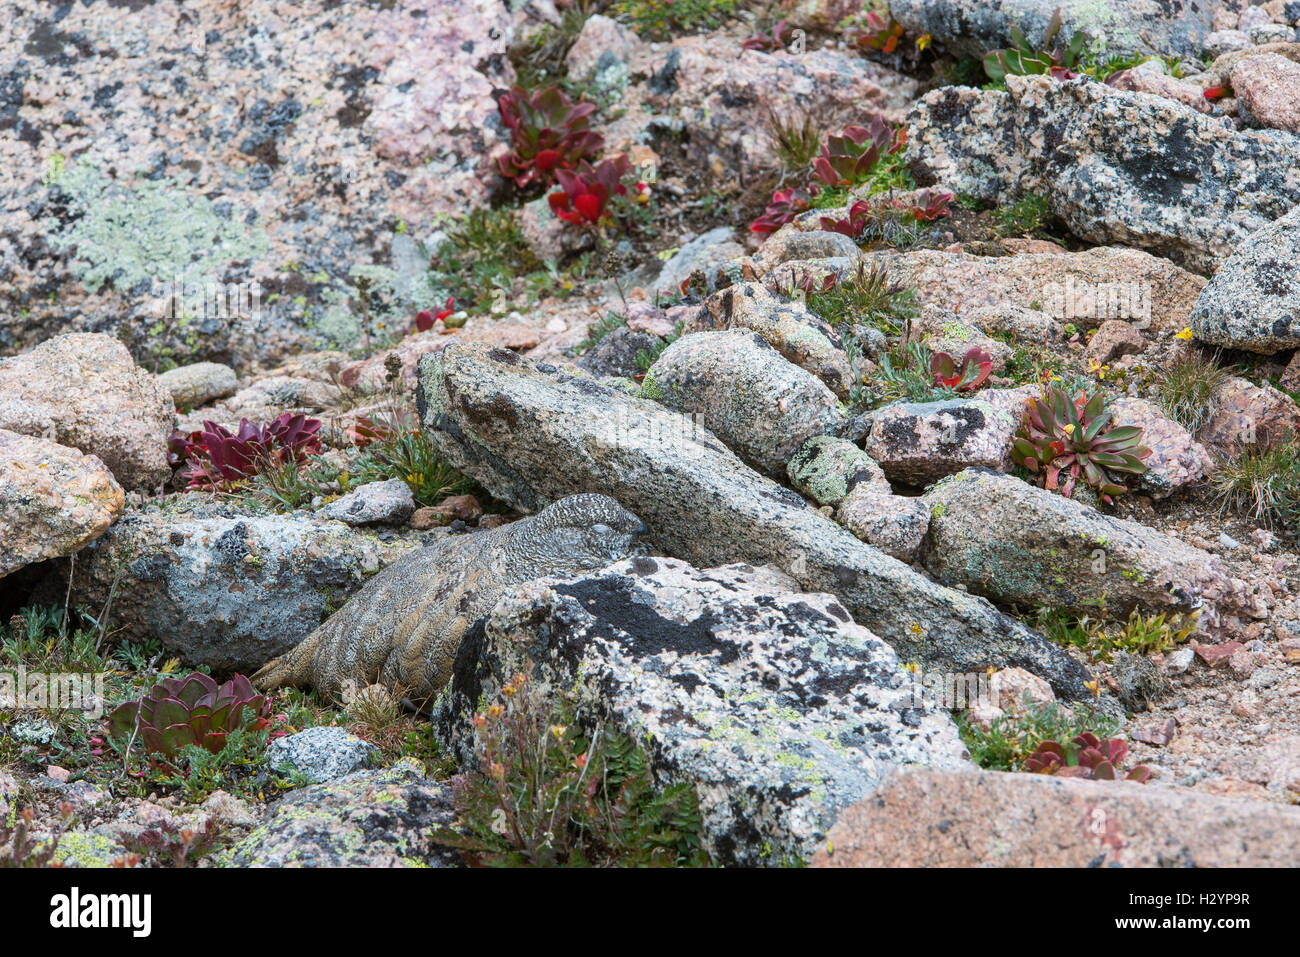 White-tailed ptarmigan (Lagopus leucura) mimetizzati fra lichen rocce coperte, montagne rocciose, Colorado, STATI UNITI D'AMERICA Foto Stock